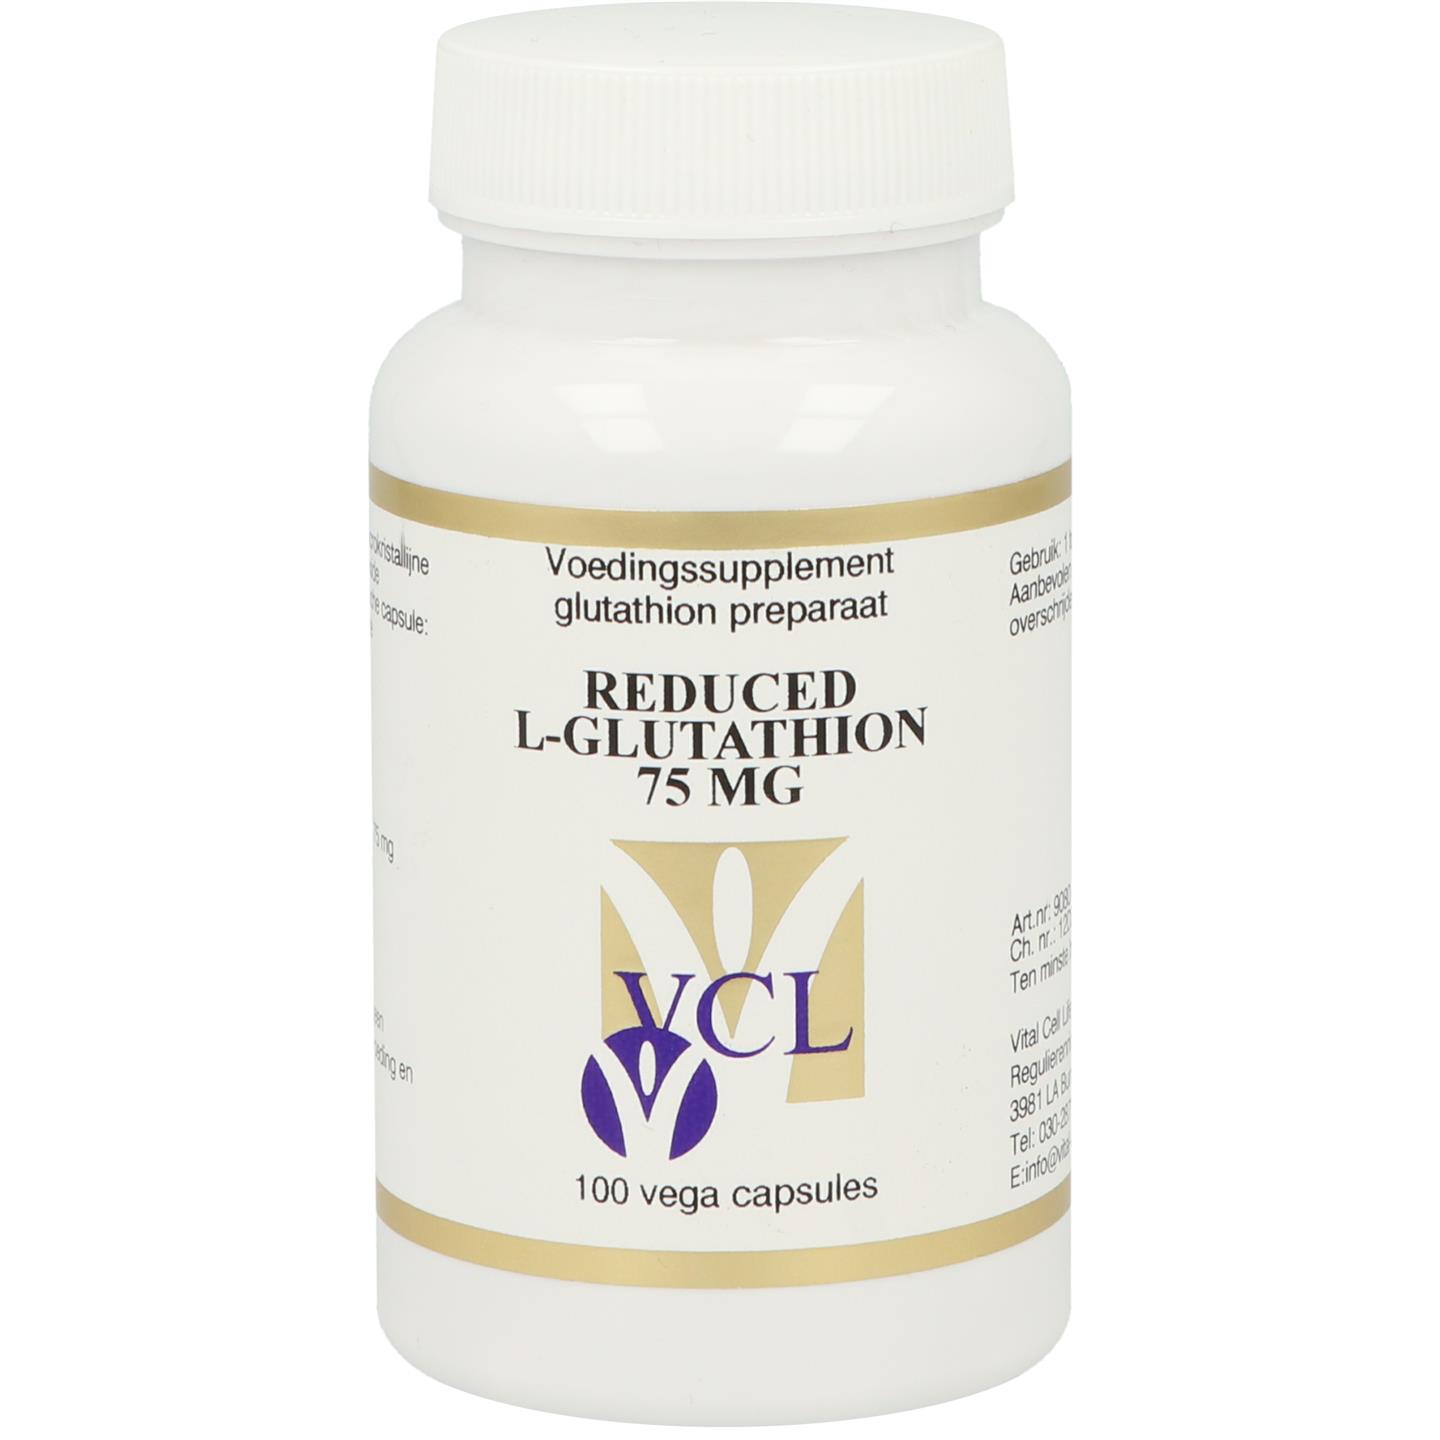 Reduced L-Glutathion 75 mg